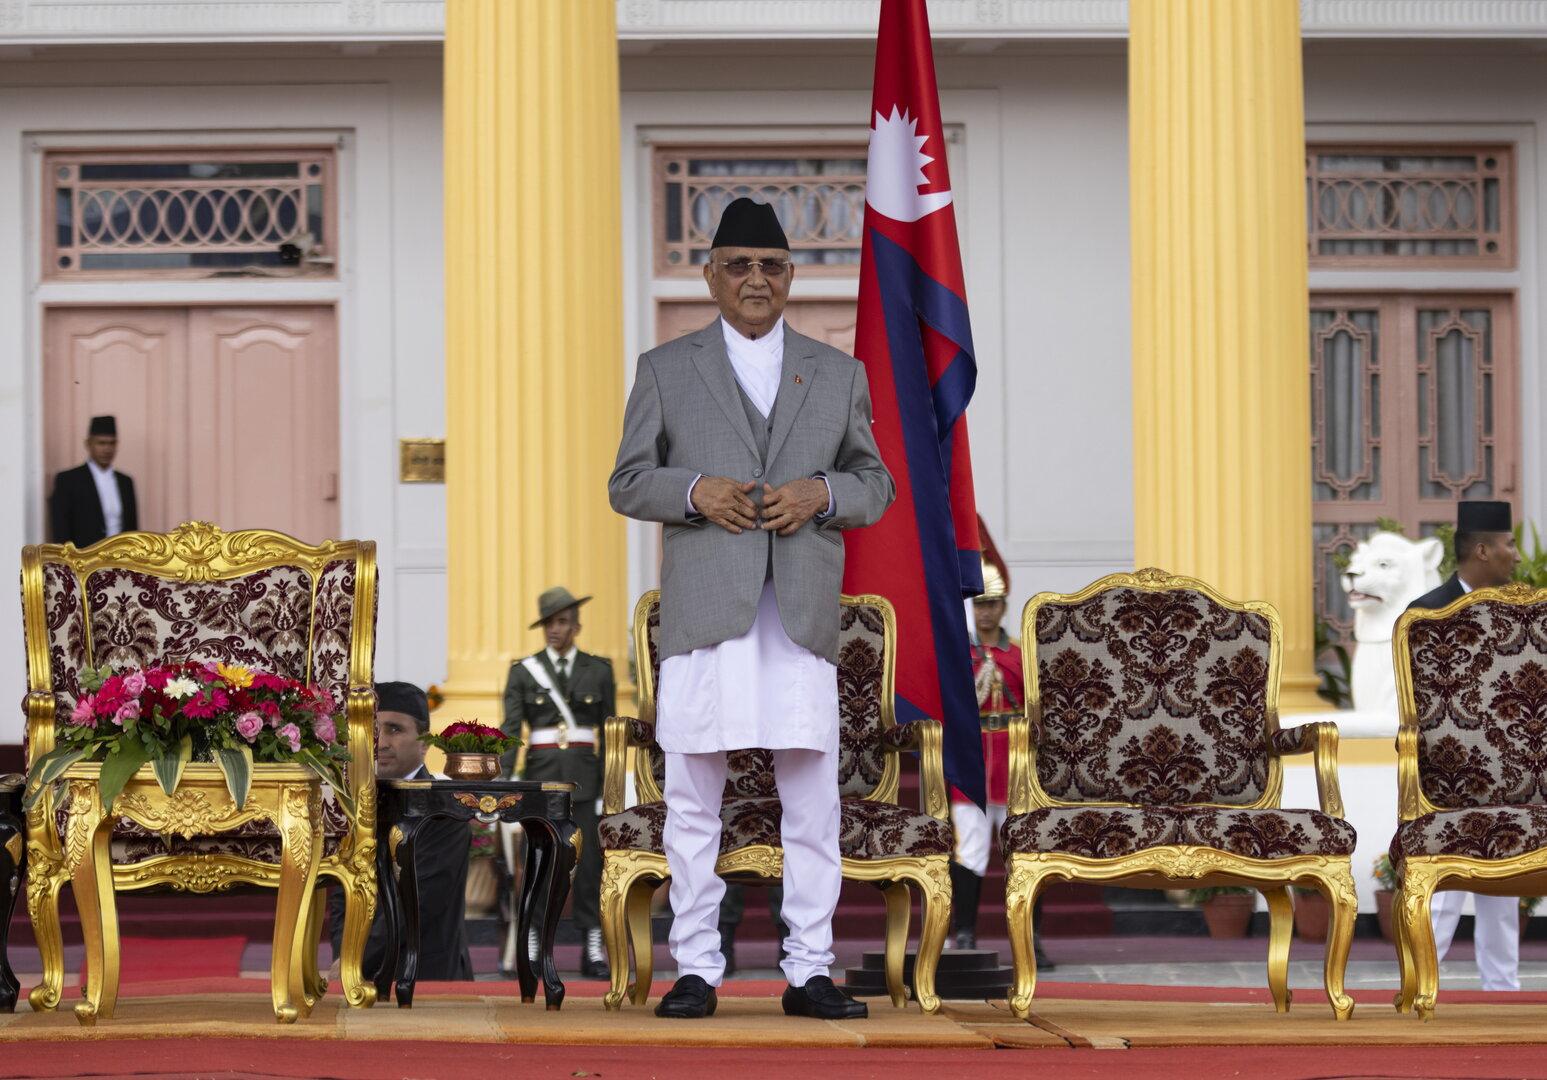 14 Regierungen in 16 Jahren: Keine Berührungsängste mit Kommunisten in Nepal